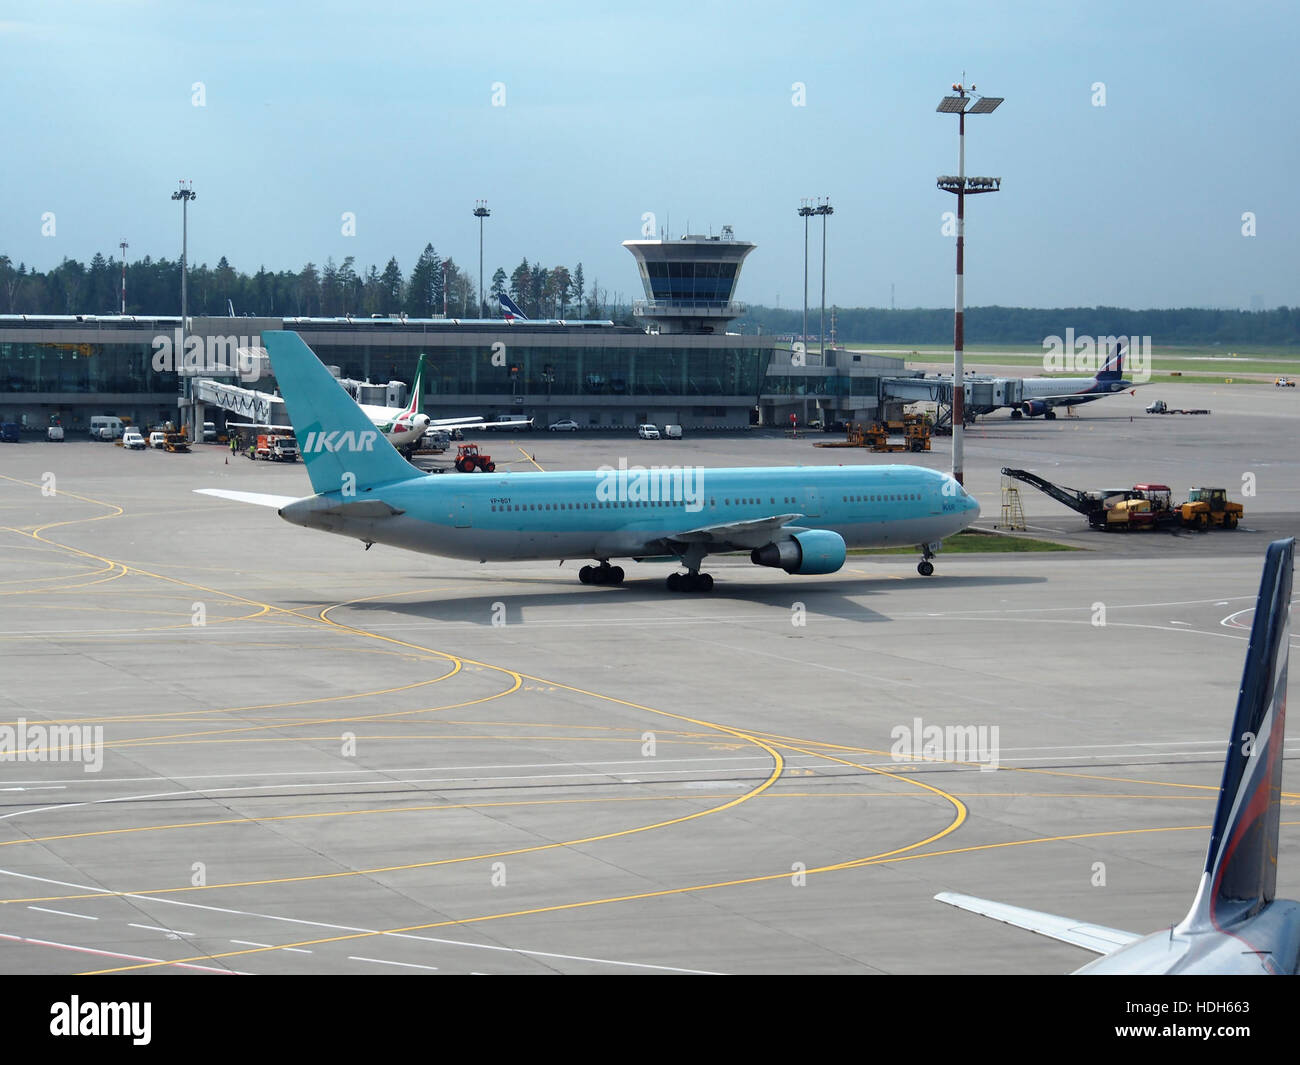 VP-boy (aeromobili) presso l'Aeroporto Internazionale di Sheremetyevo pic1 Foto Stock